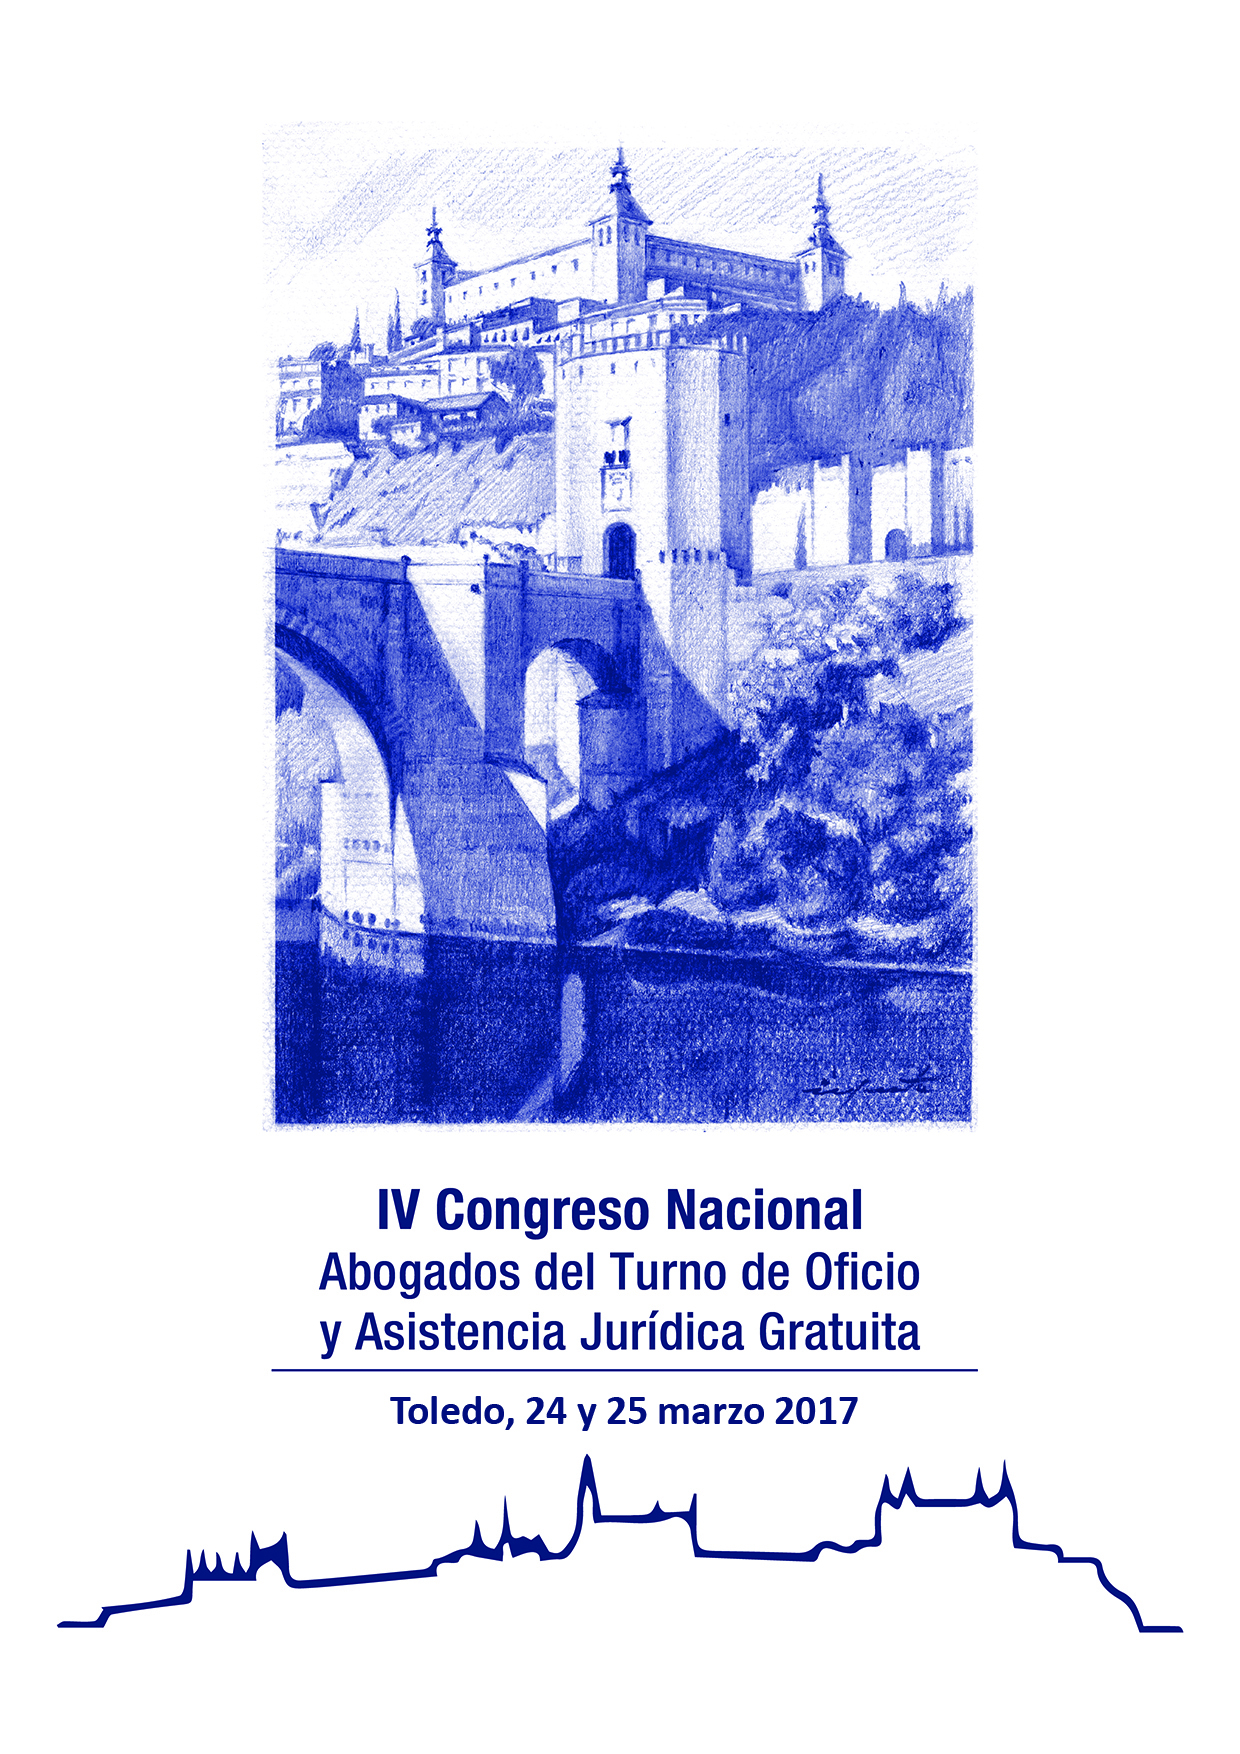 IV Congreso Nacional de Abogados del Turno de Oficio y Asistencia Jurídica Gratuita